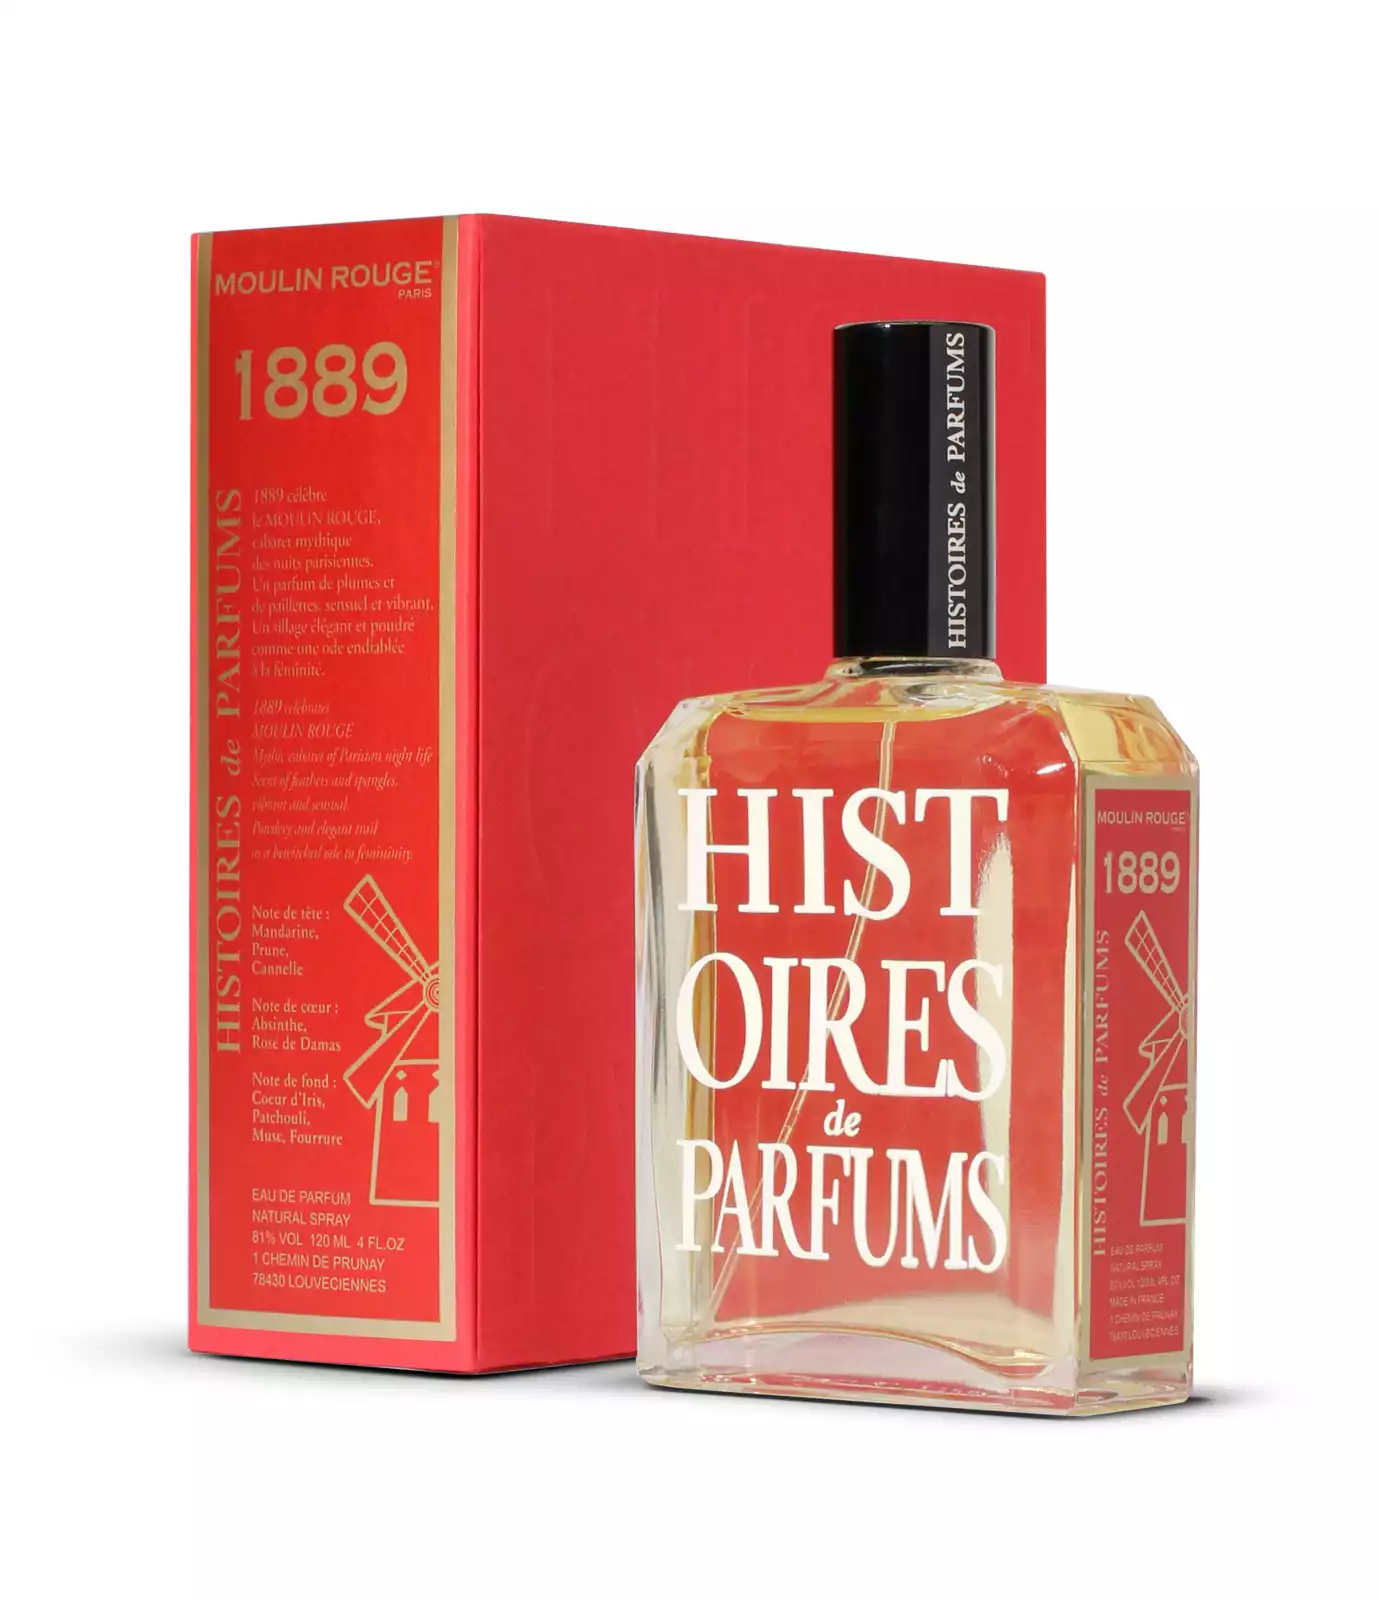 1889 Moulin Rogue – Histoires de Parfums (ženski parfum)